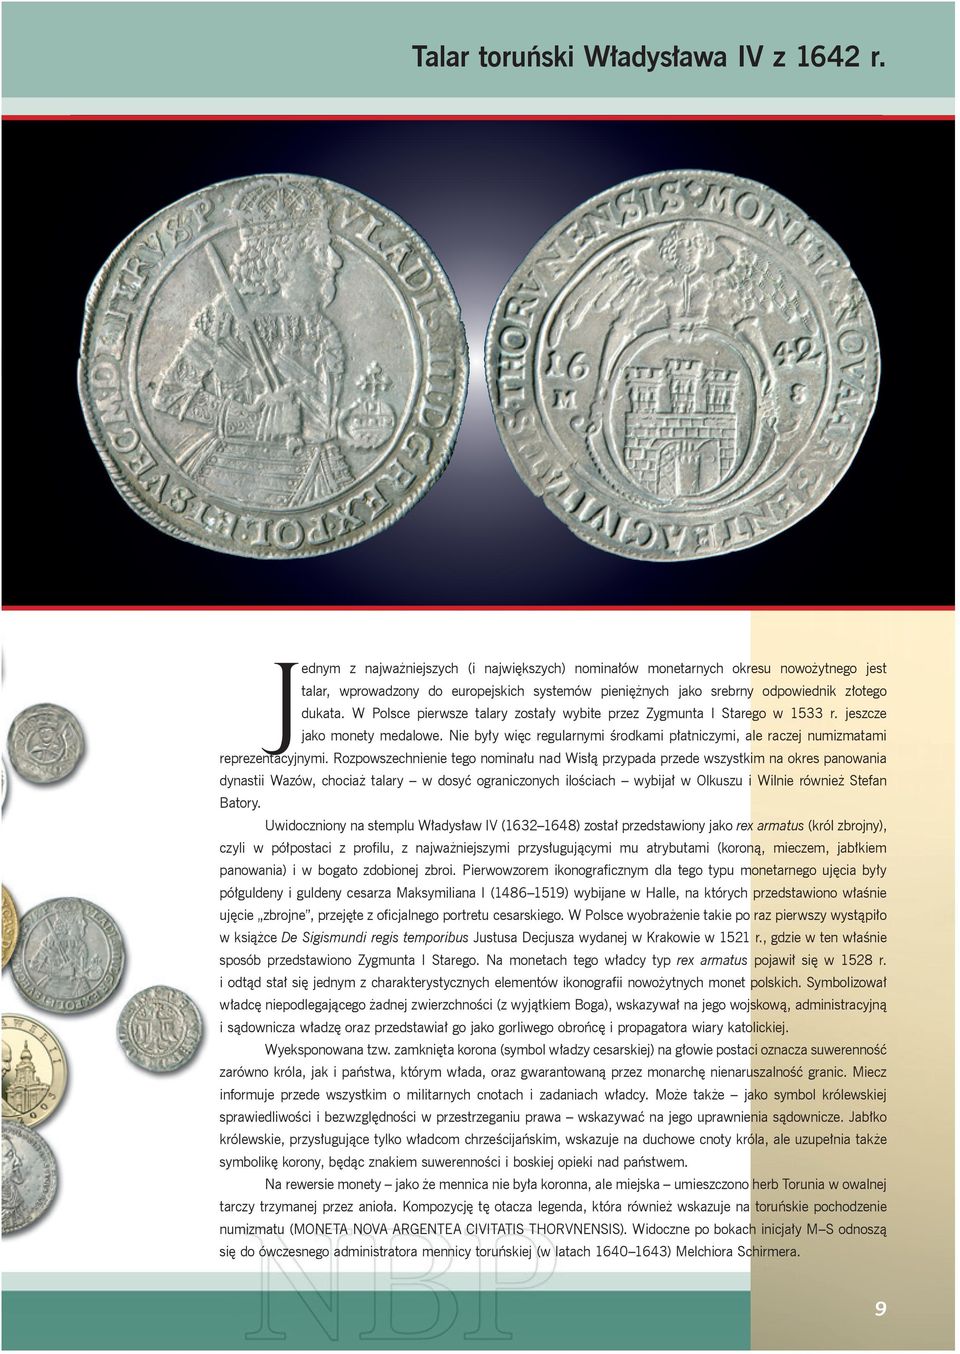 W Polsce pierwsze talary zostały wybite przez Zygmunta I Starego w 1533 r. jeszcze jako monety medalowe. Nie były więc regularnymi środkami płatniczymi, ale raczej numizmatami reprezentacyjnymi.